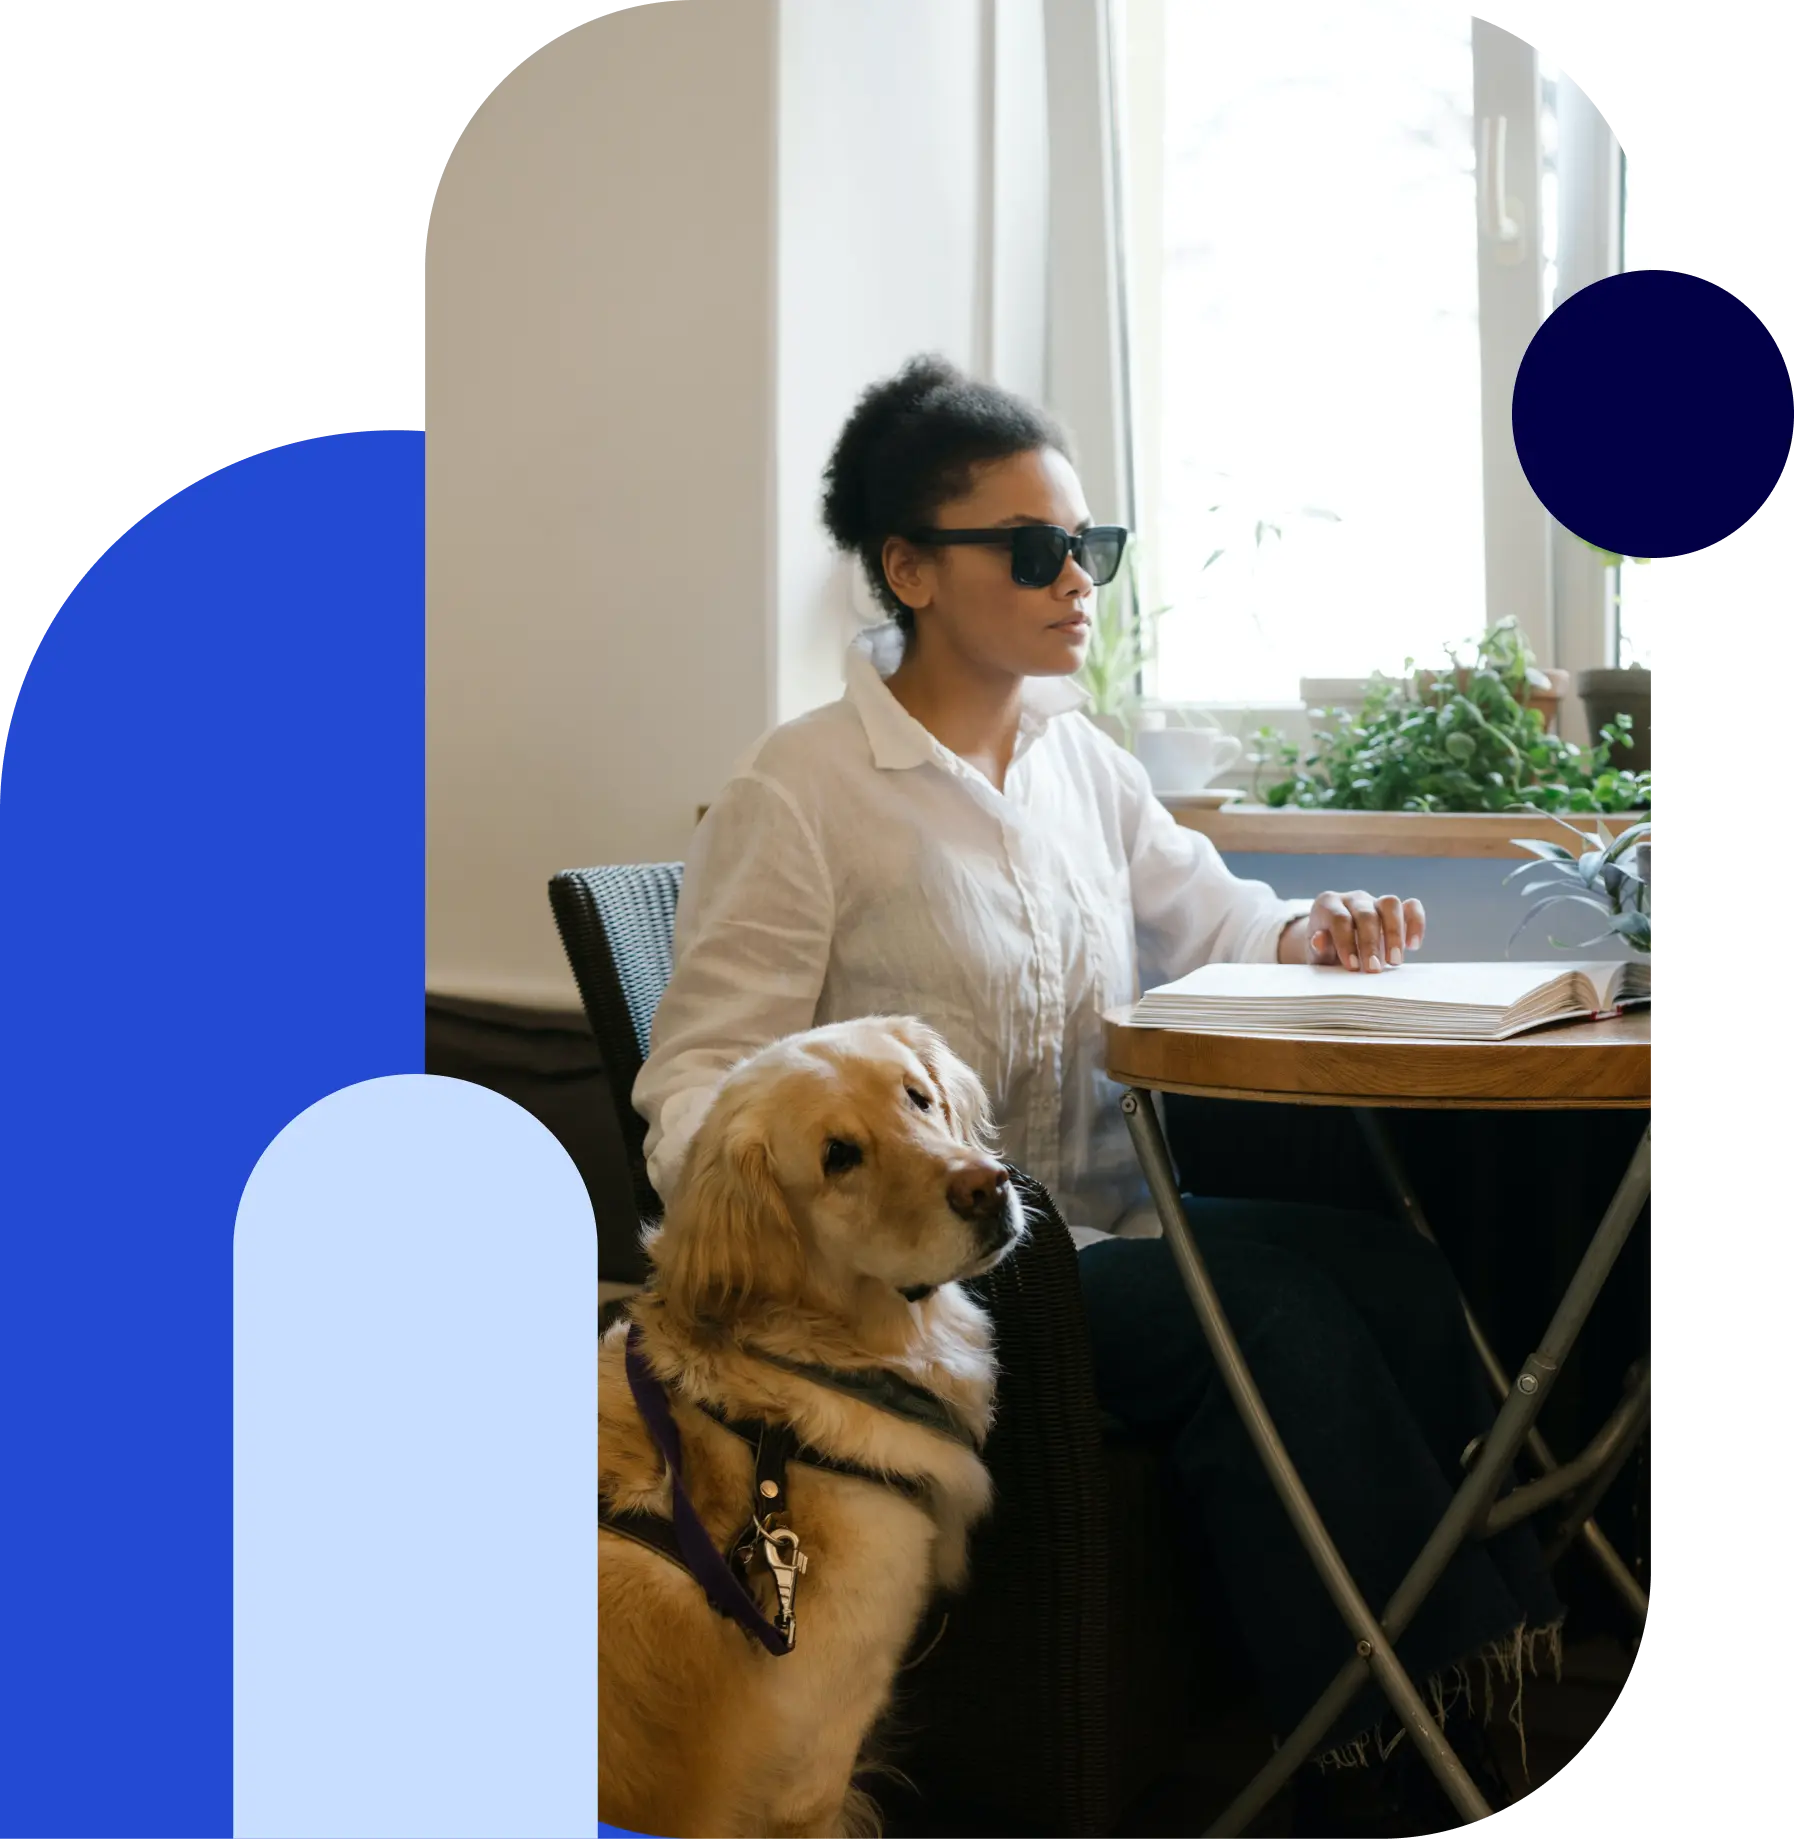 Slechtziende vrouw leest braille met blindengeleidehond naast haar.